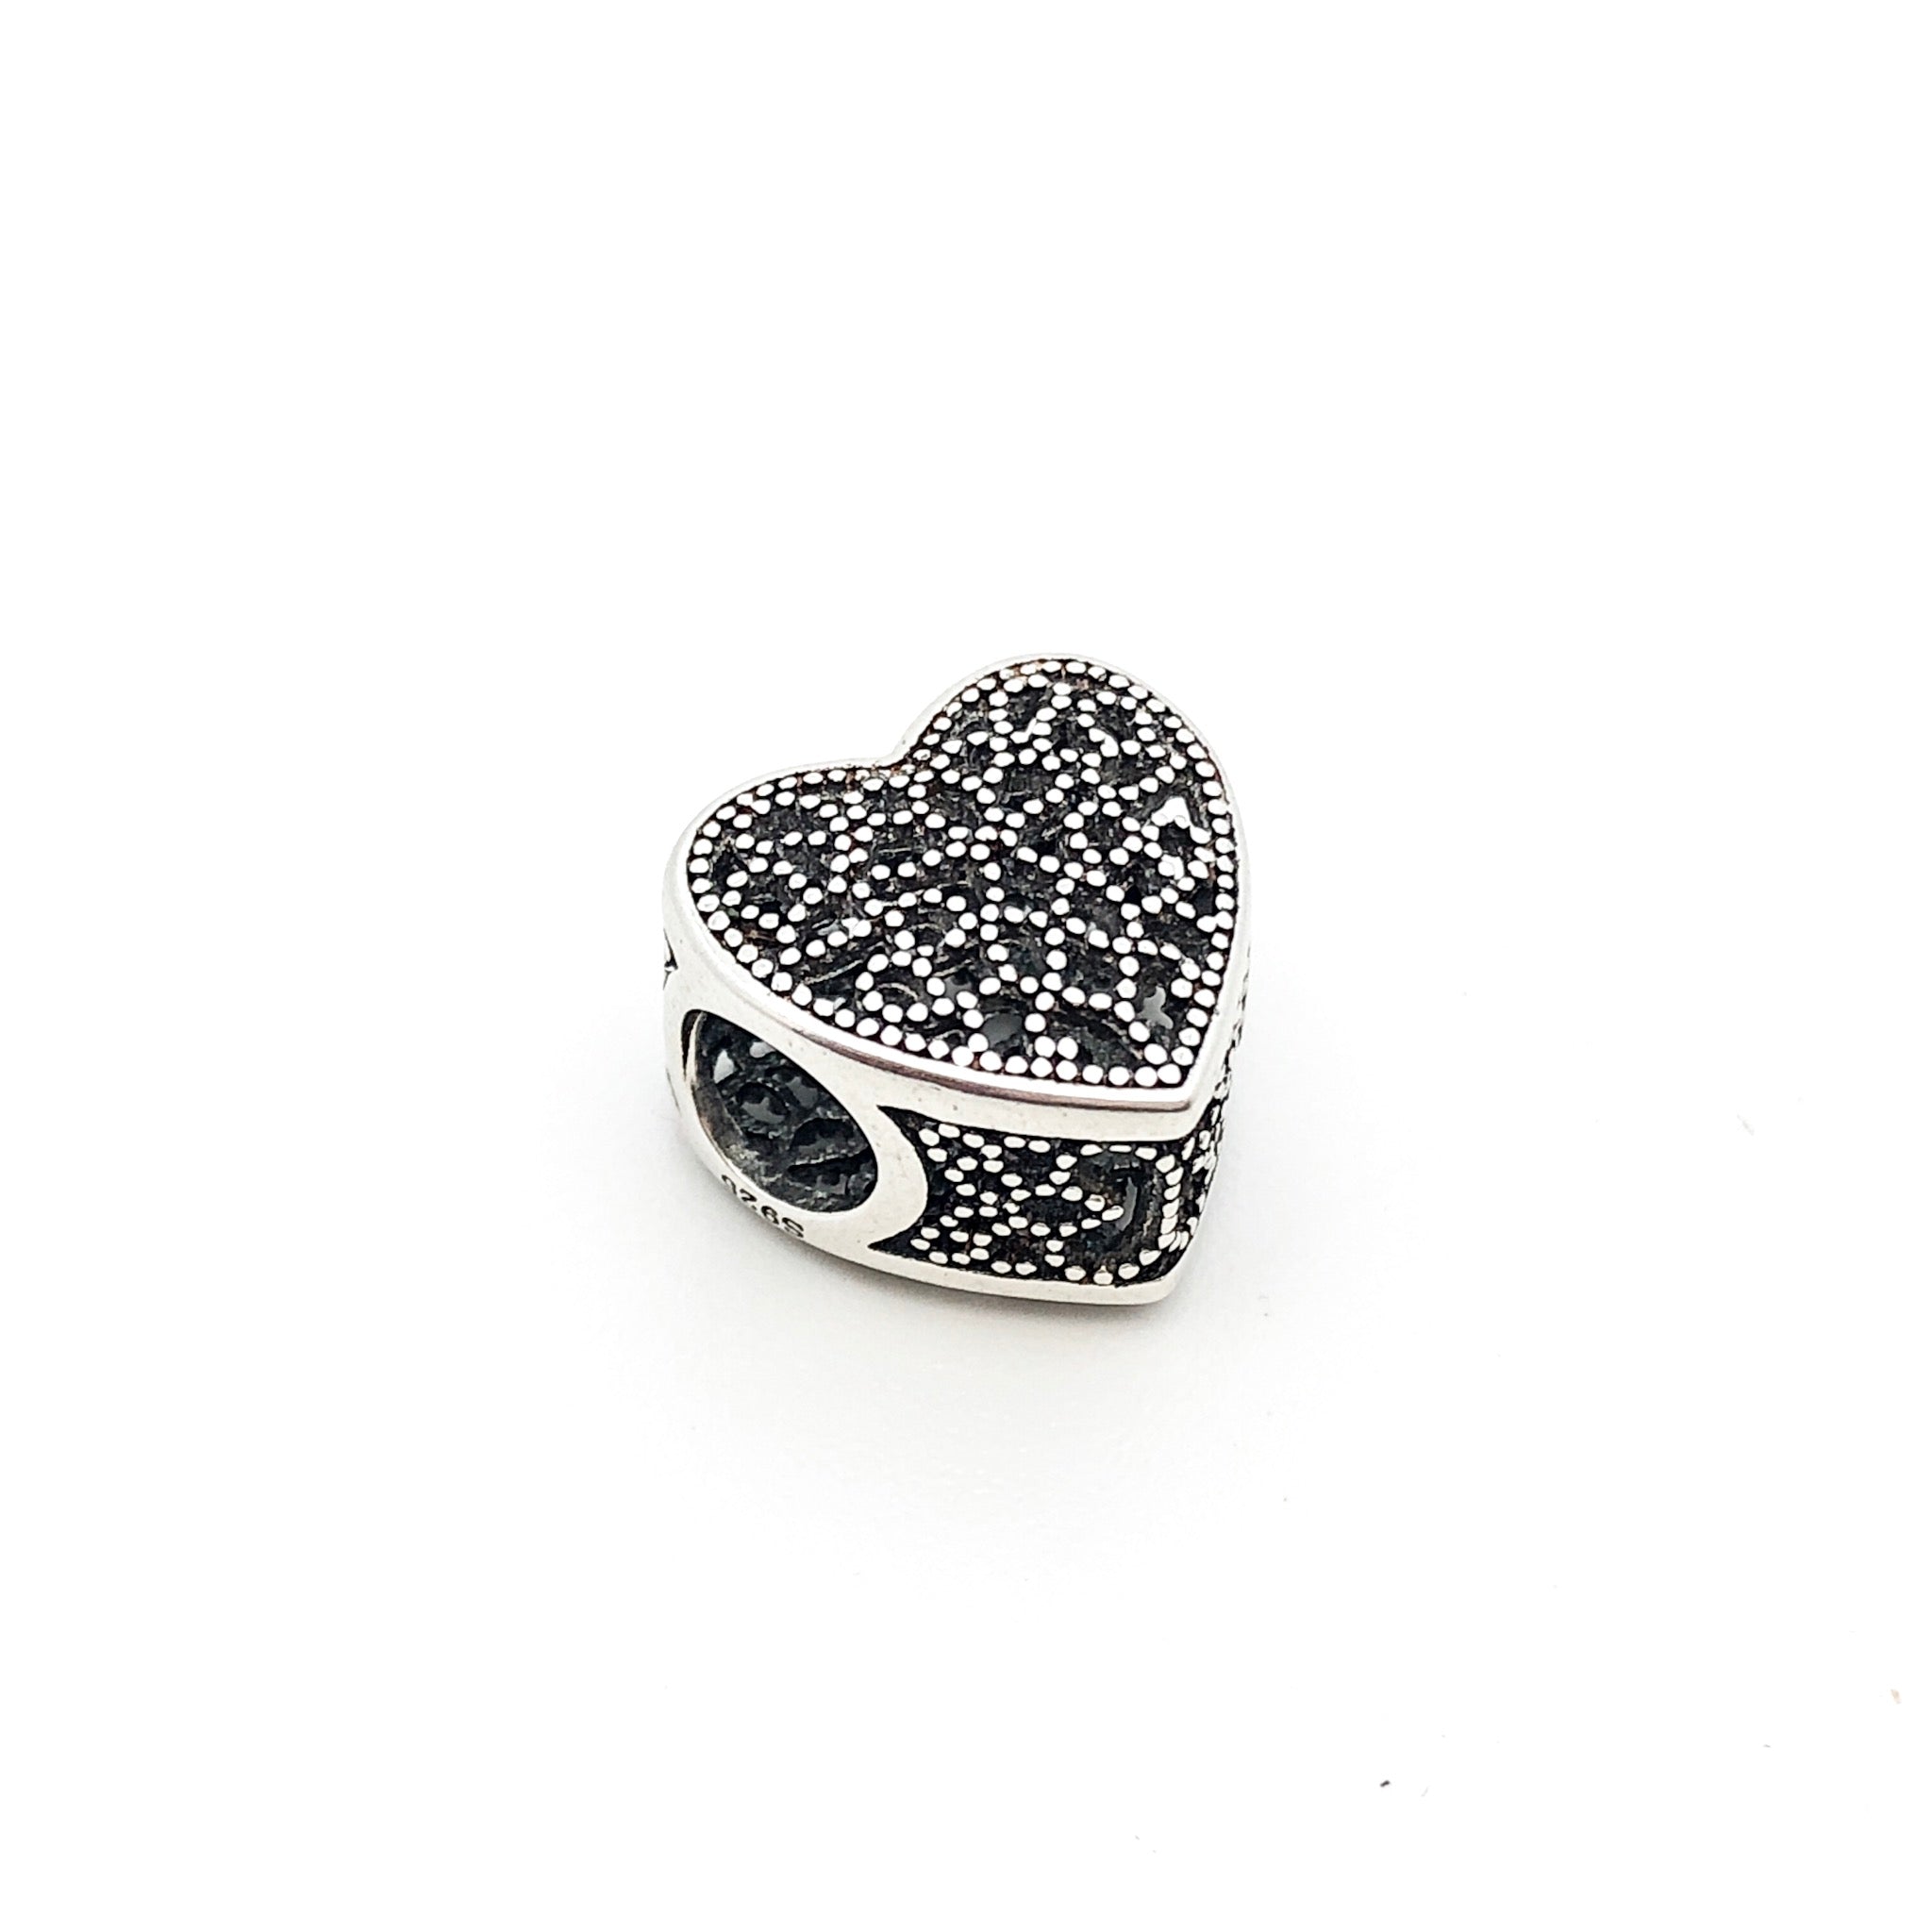 Lace Heart Charm Bead - Stone Heart 